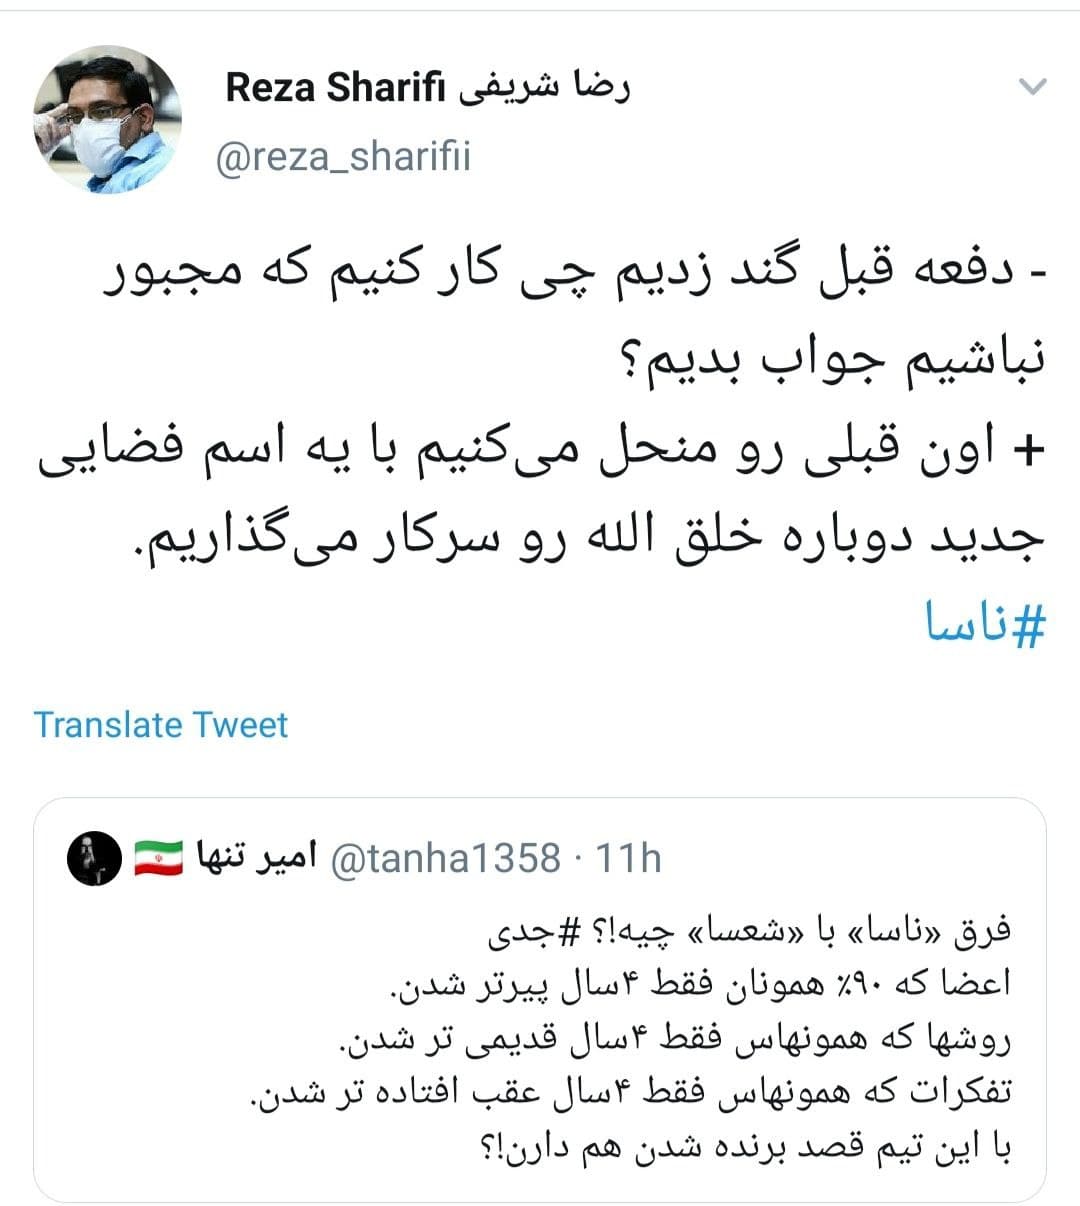 مخالفت صادق خرازی با رهبری خاتمی در اصلاحات/ حزب ندا برای انتخابات به دنبال ظریف و خرازی است